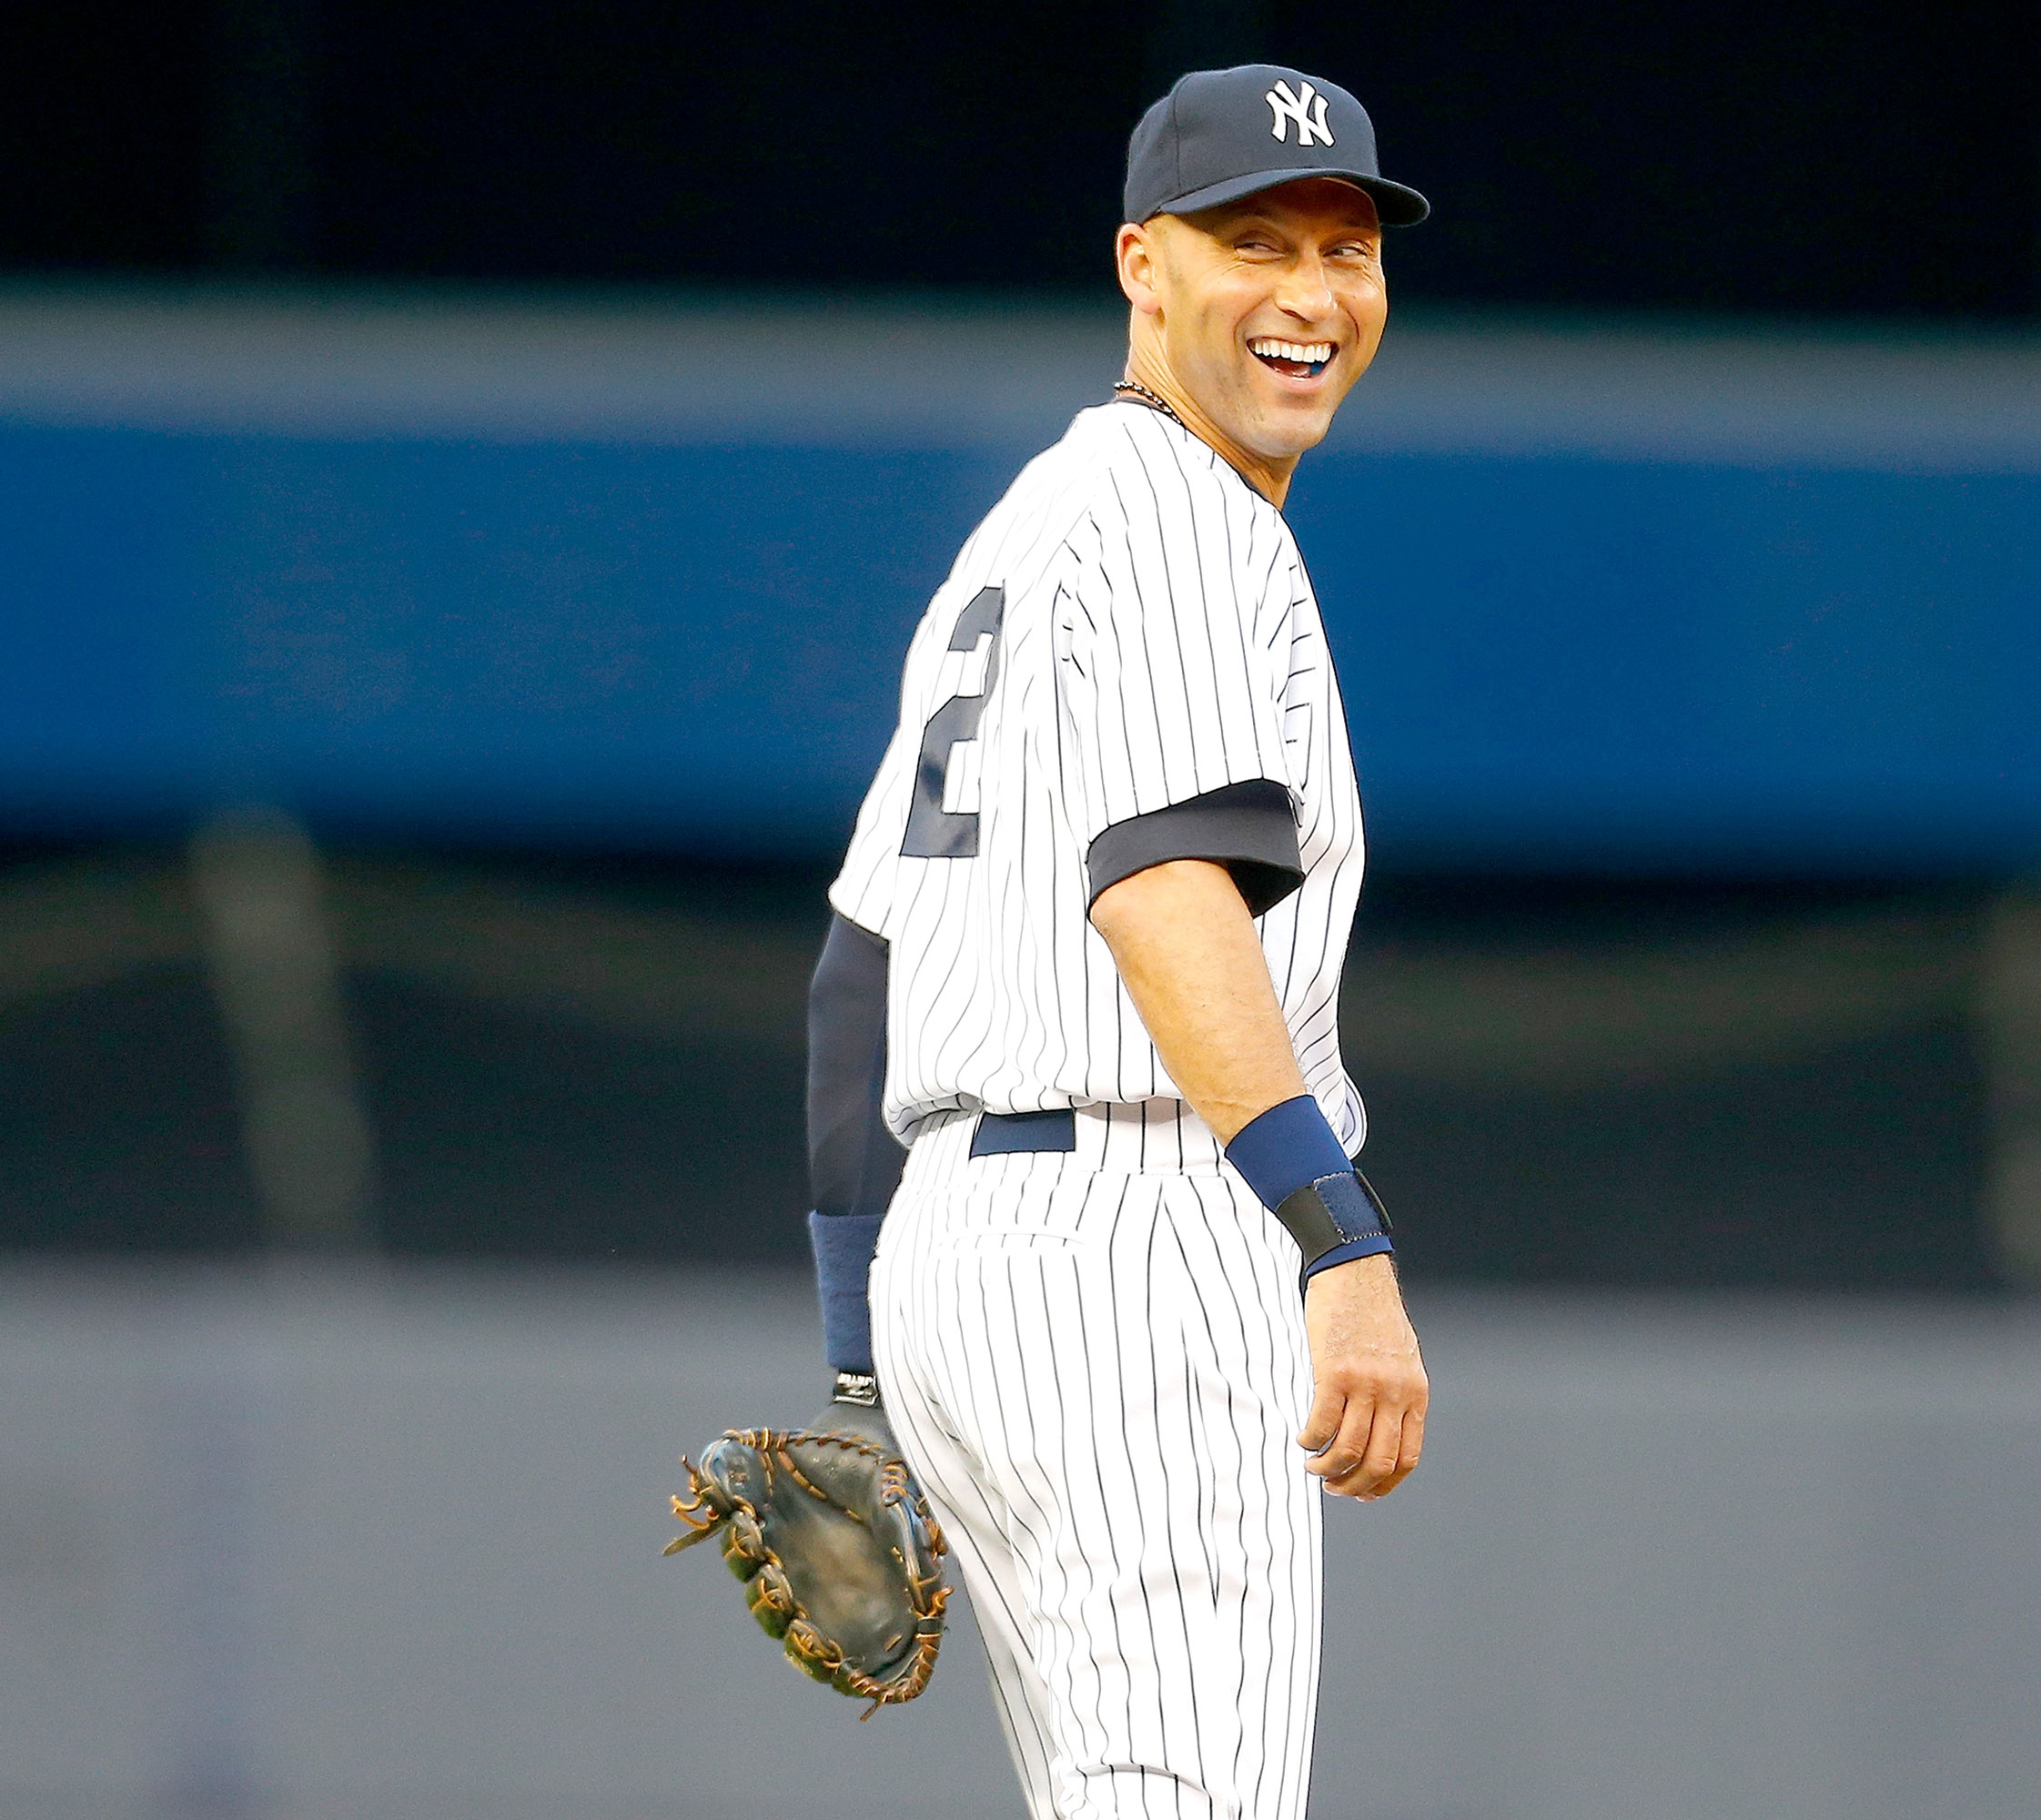 The Yankees retire Derek Jeter's jersey